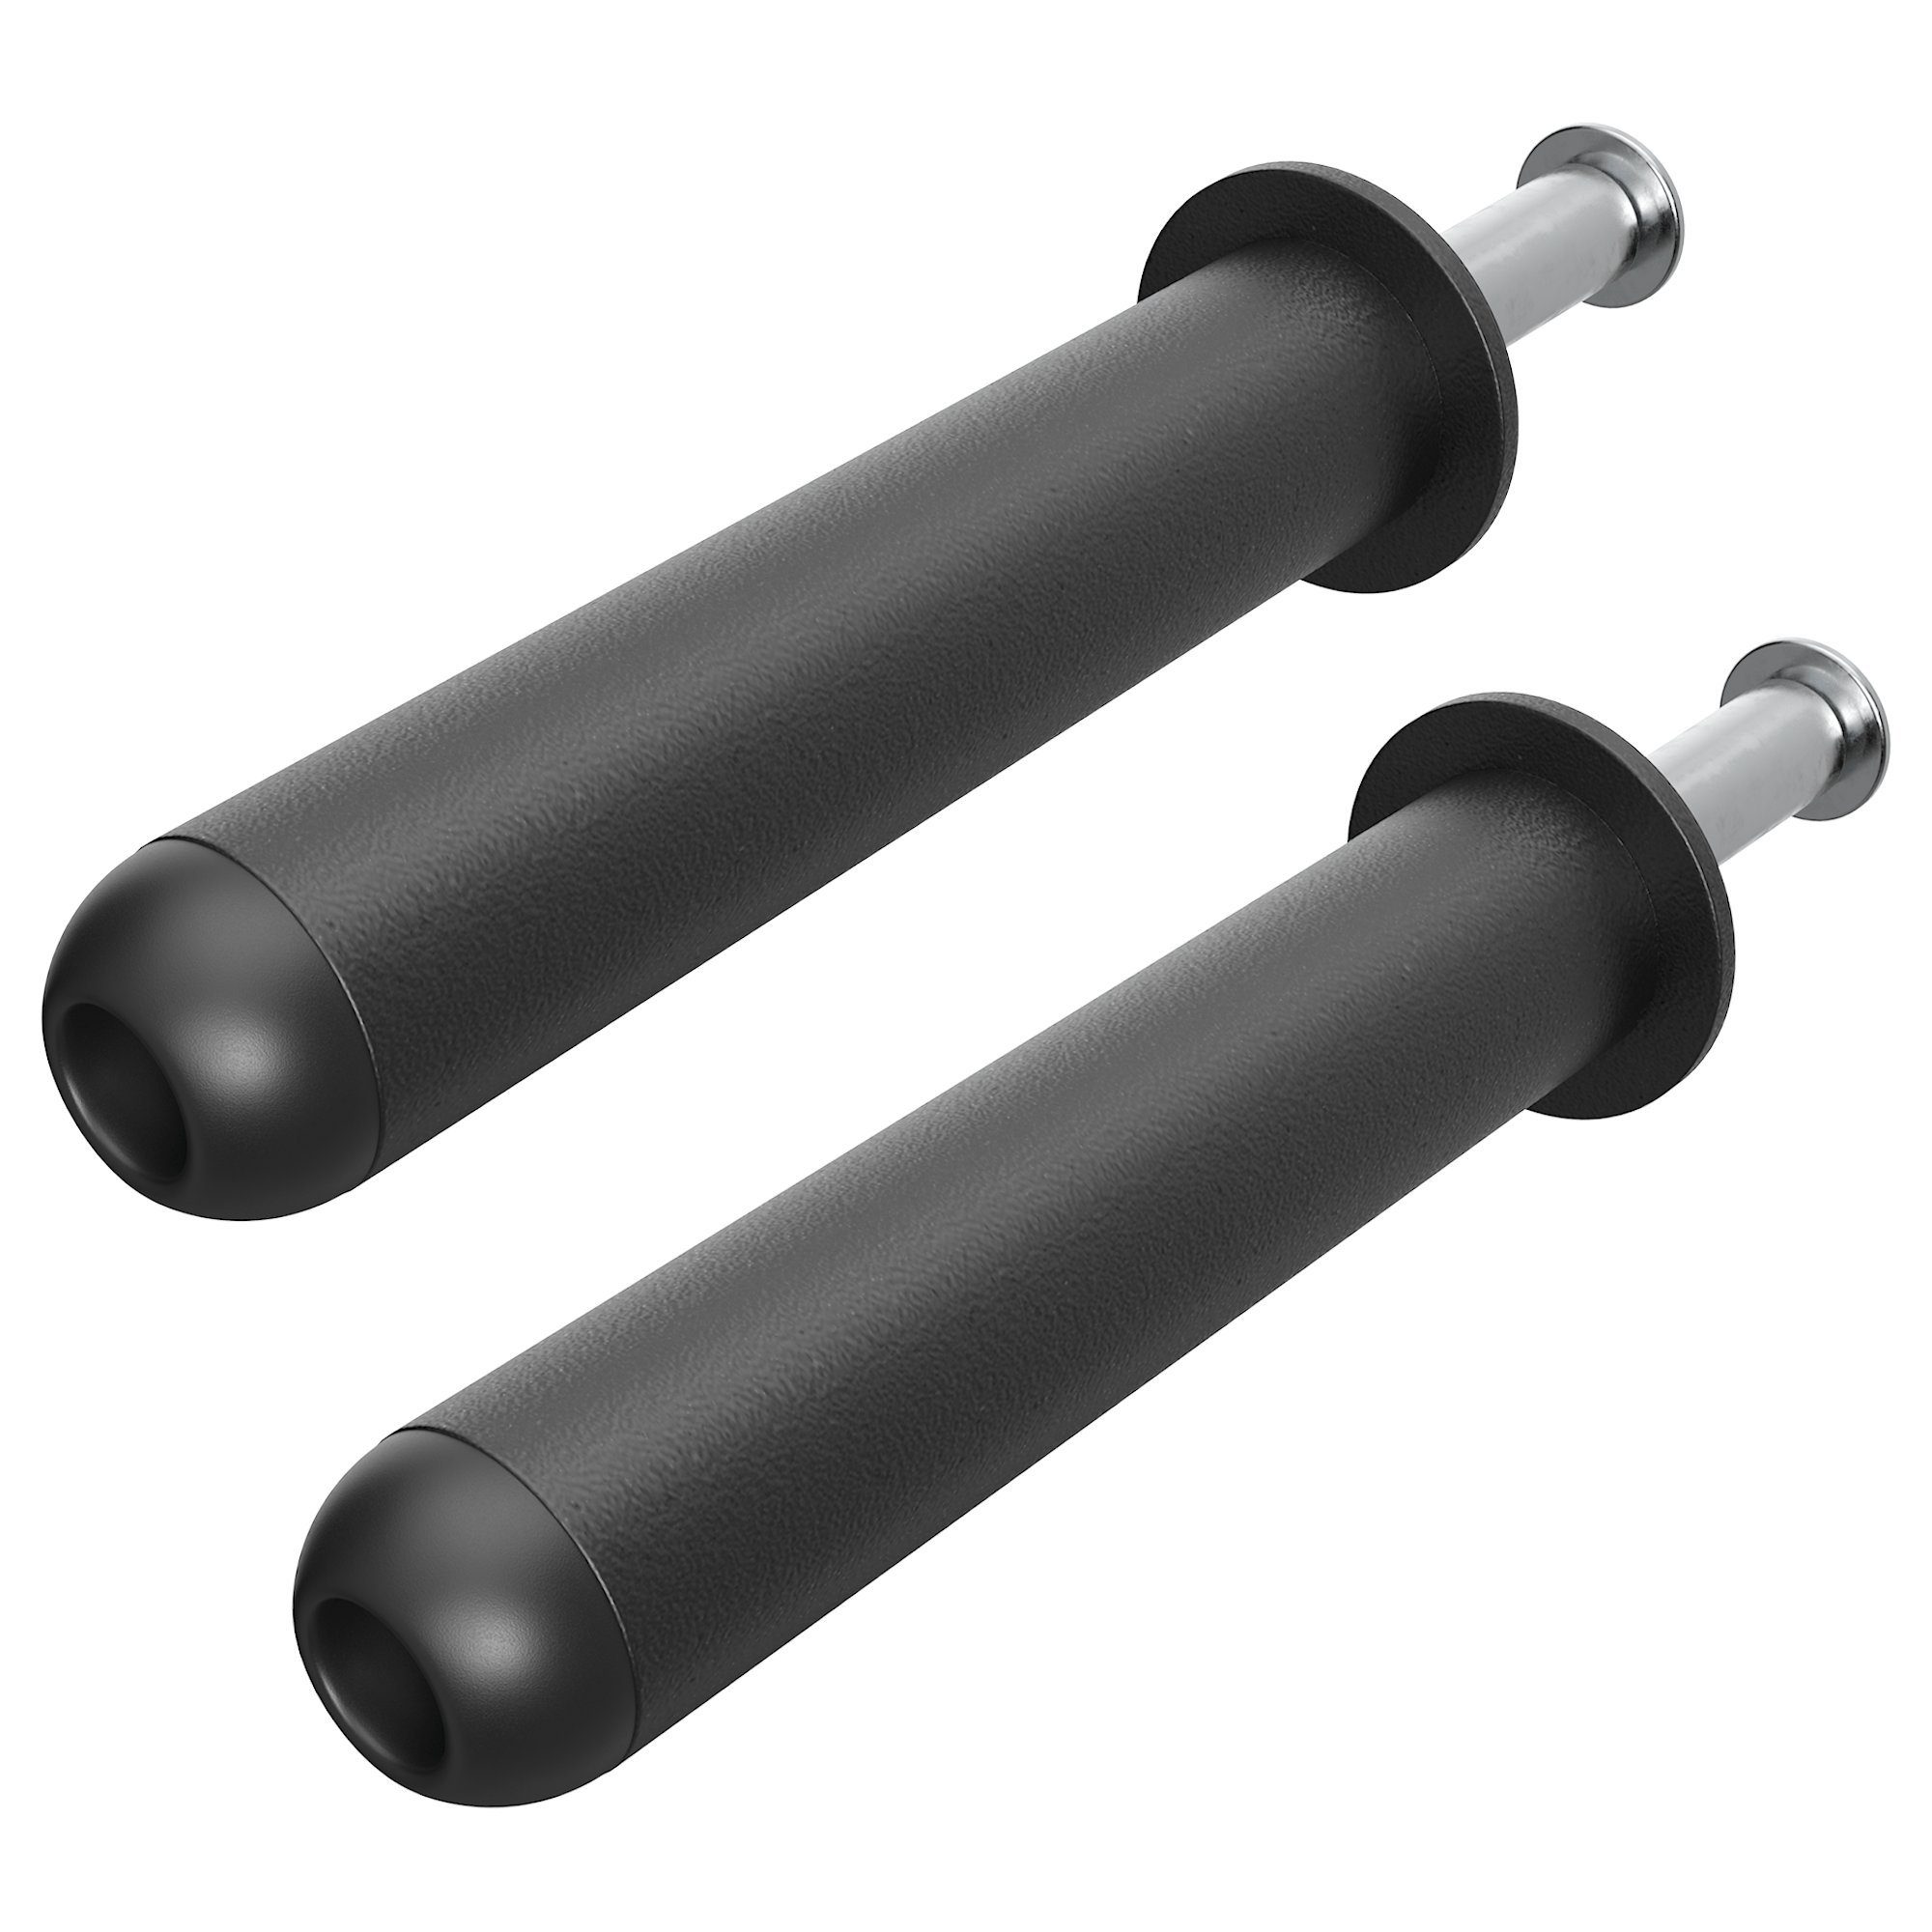 ATLETICA Power Rack R7 Gewichts-Pins, Paar, 20 oder 30 cm, Ordnung im Gym